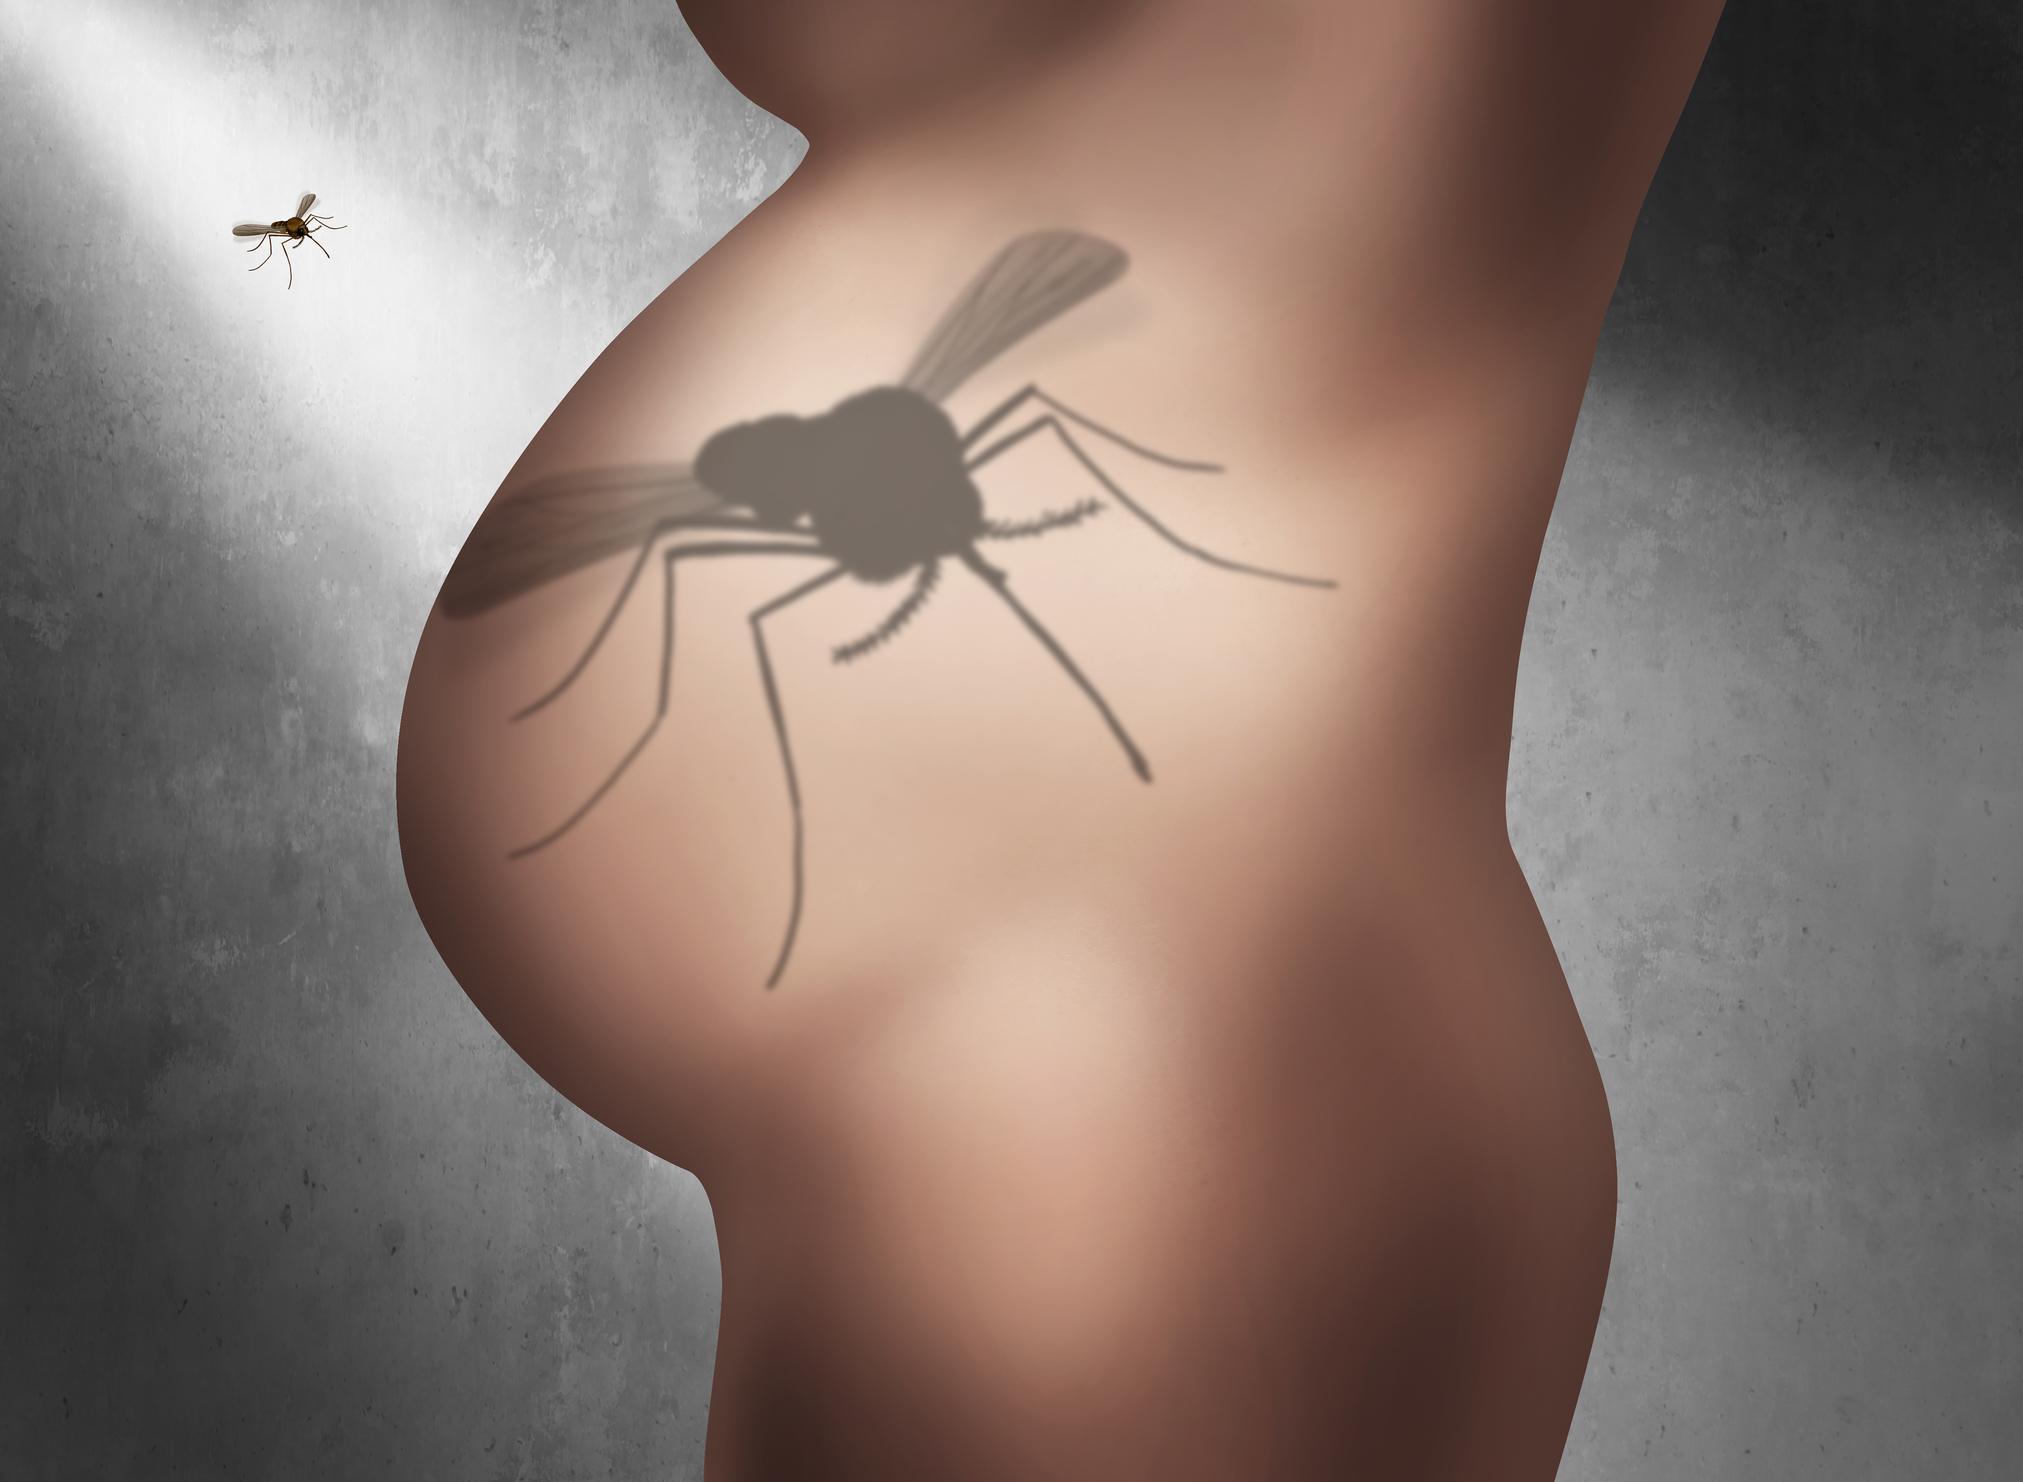 Zika vs DEET